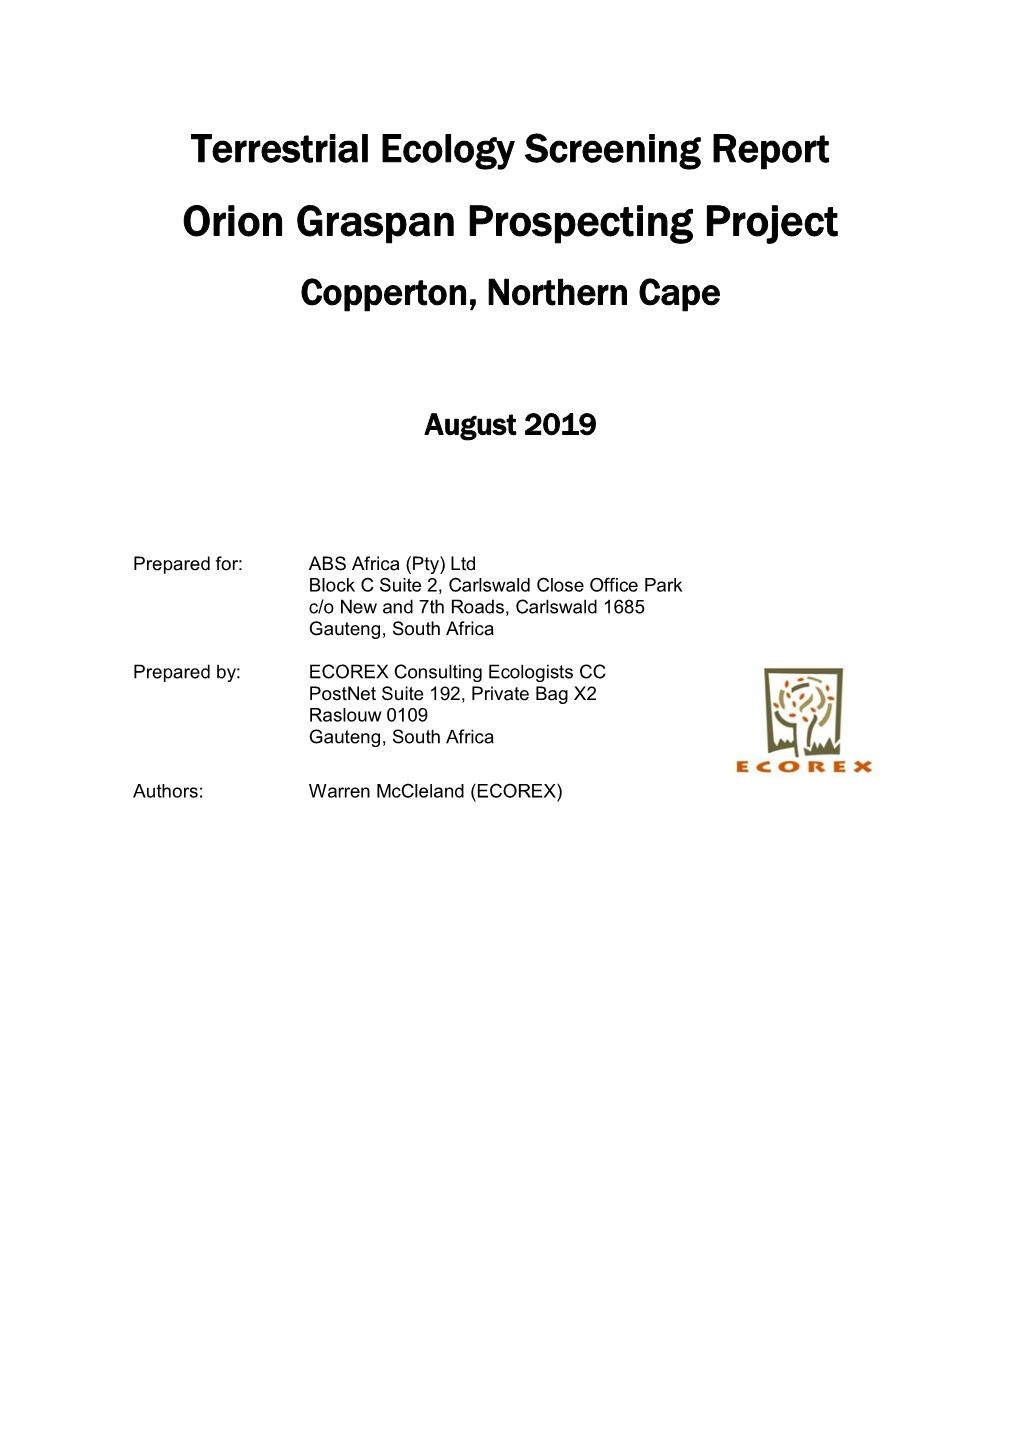 Graspan Screening Report